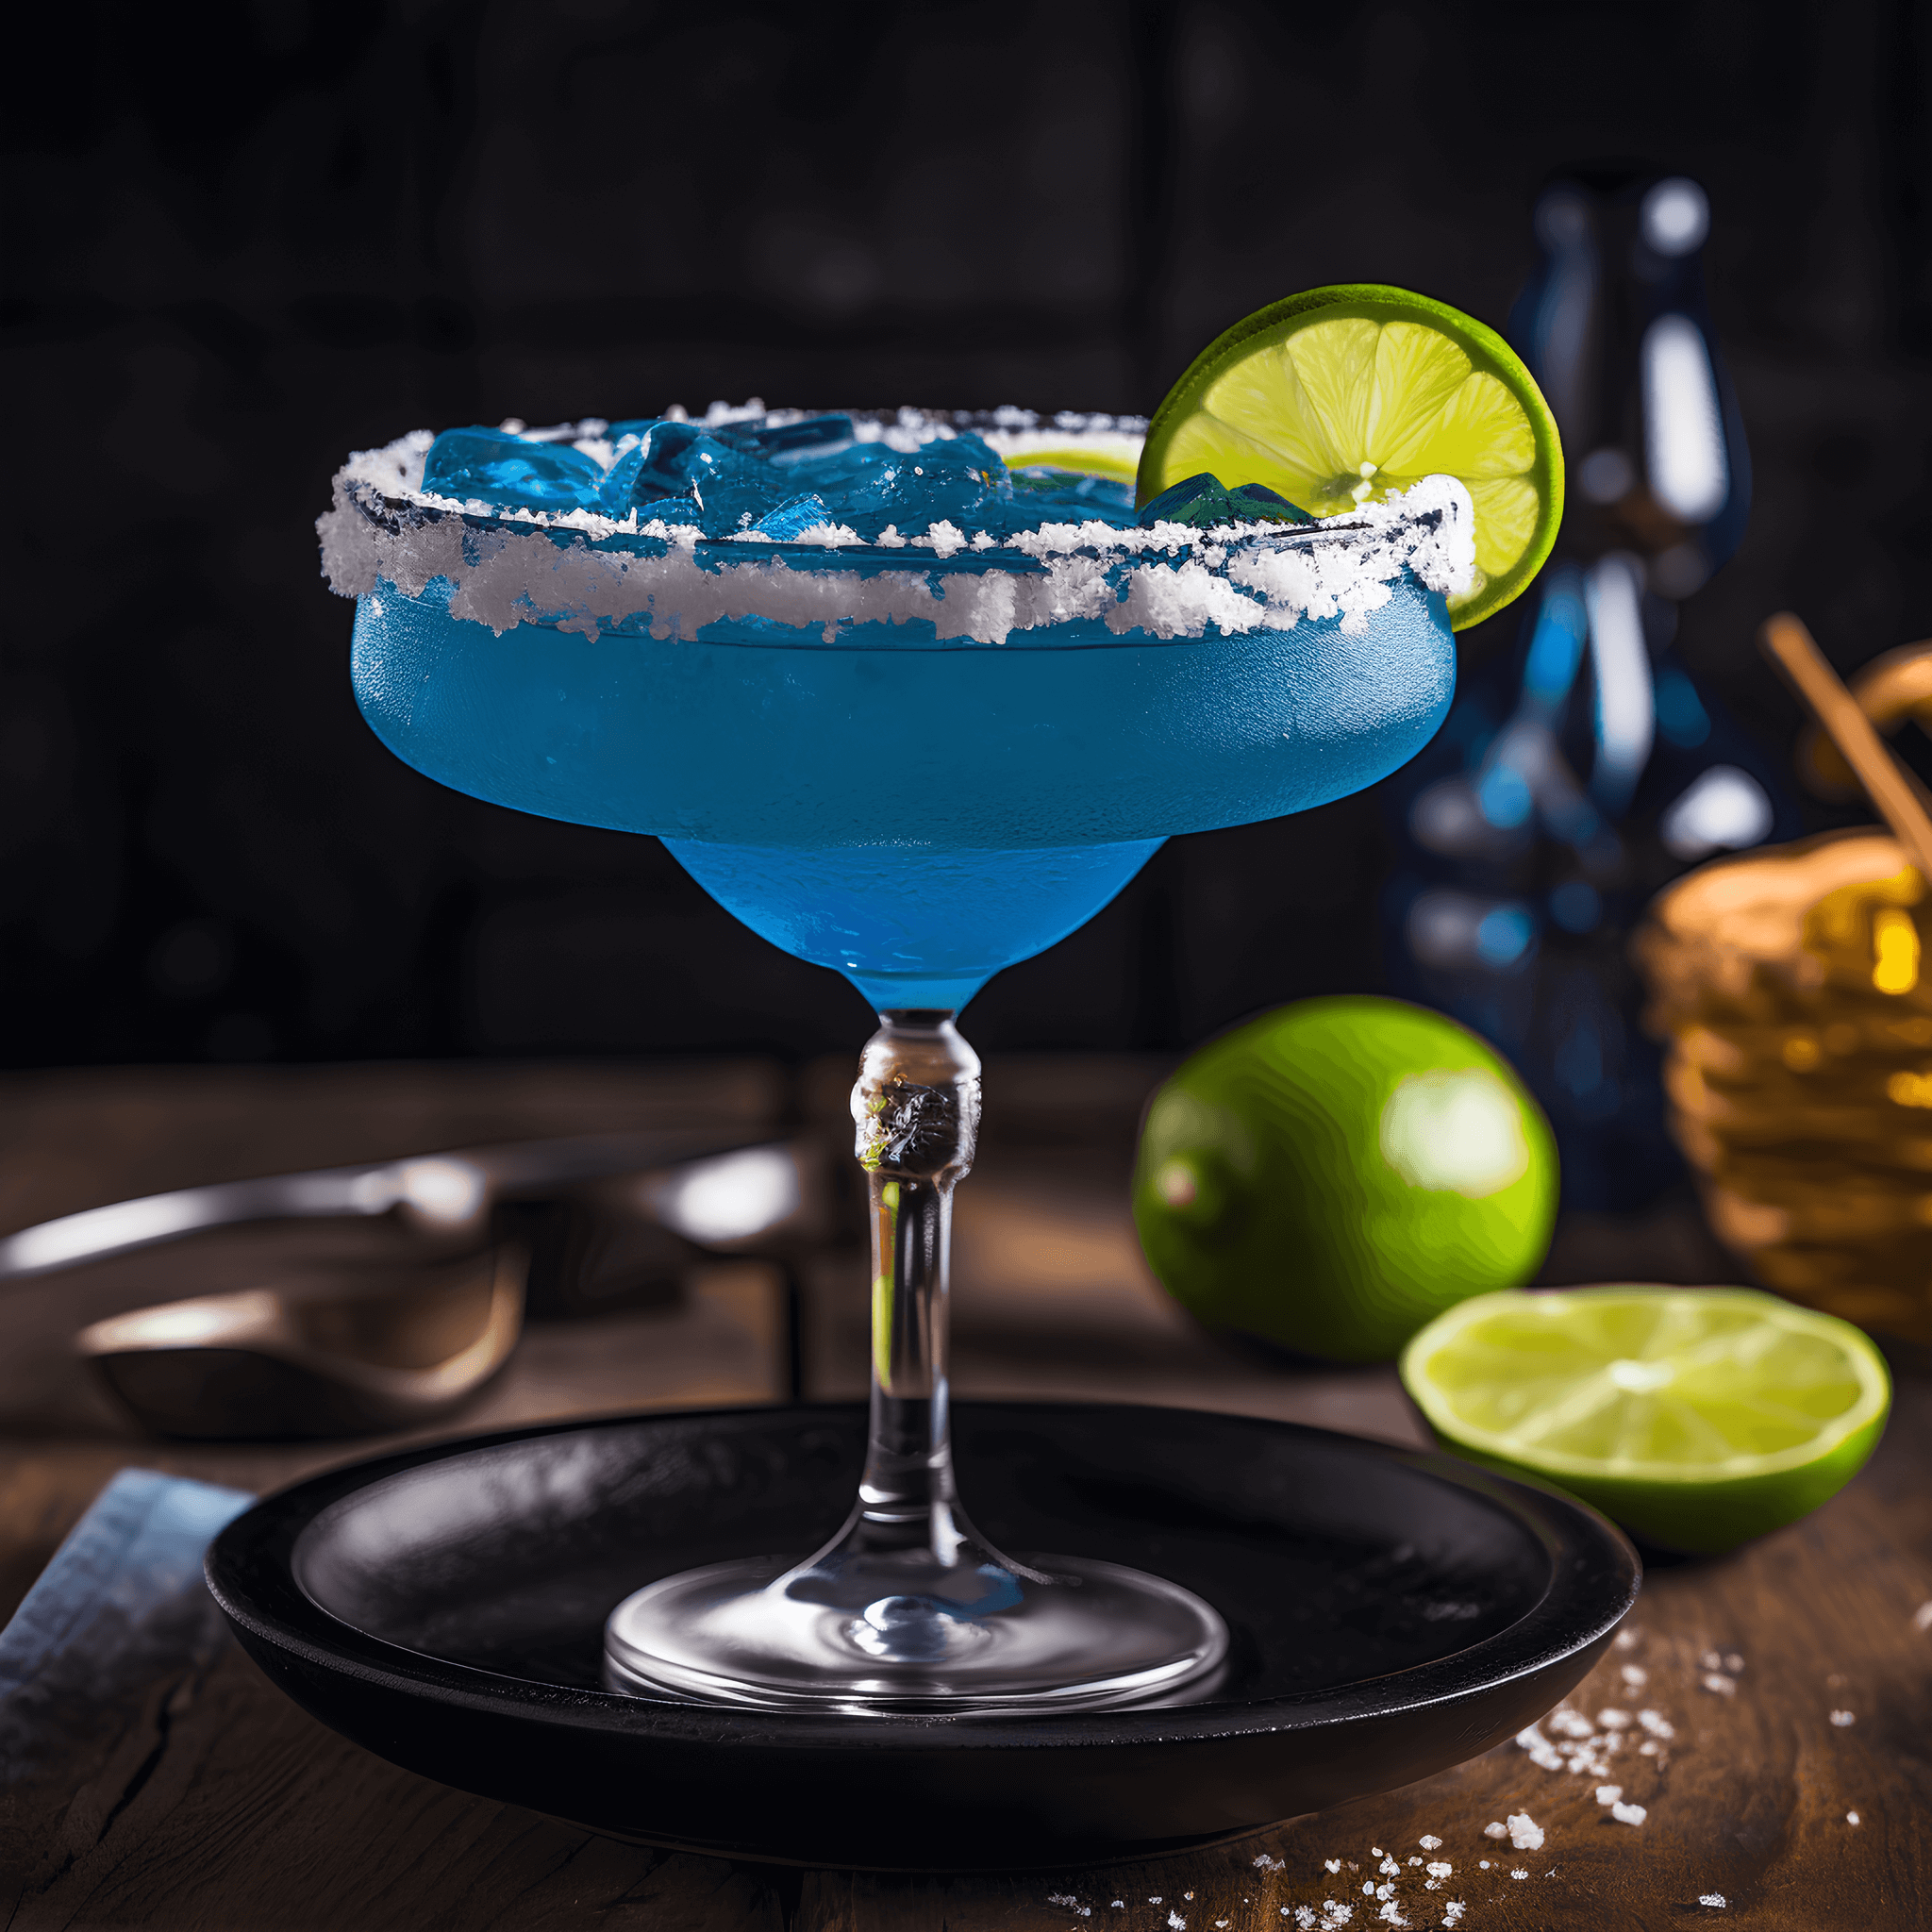 Margarita Azul Cóctel Receta - La Margarita Azul tiene un sabor bien equilibrado, combinando los sabores ácidos y agrios de lima y licor de naranja con la dulzura del curaçao azul. Es un cóctel fuerte y refrescante con un toque de frutas tropicales.